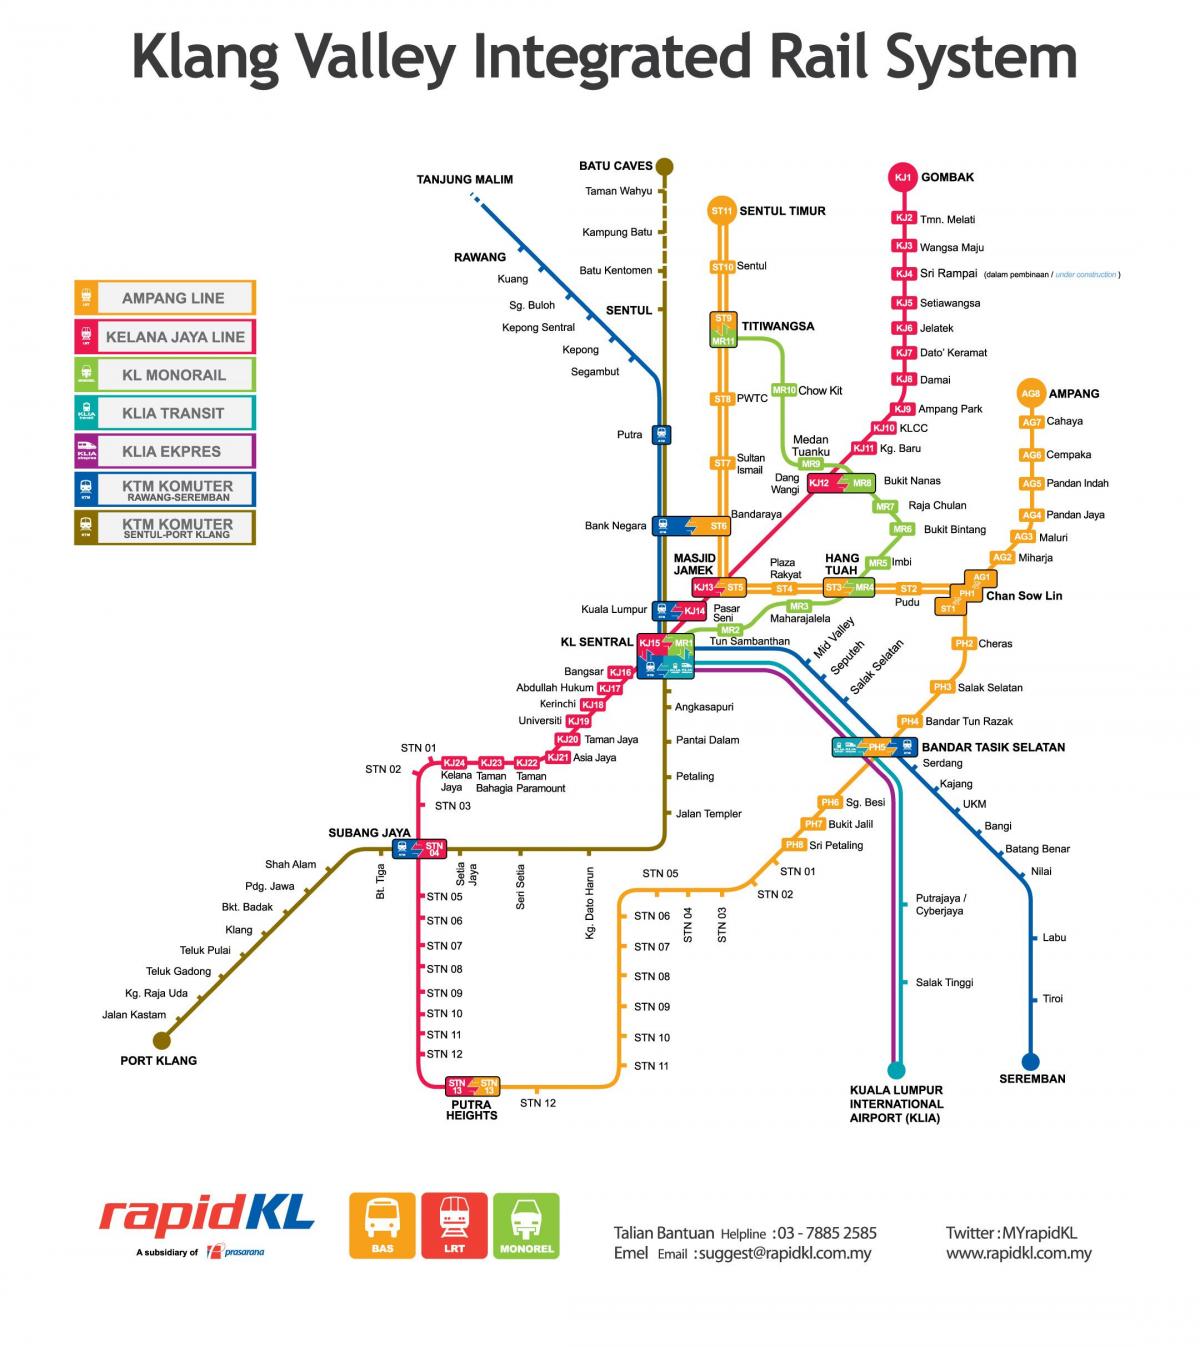 ملائیشیا کی نقل و حمل کا نقشہ